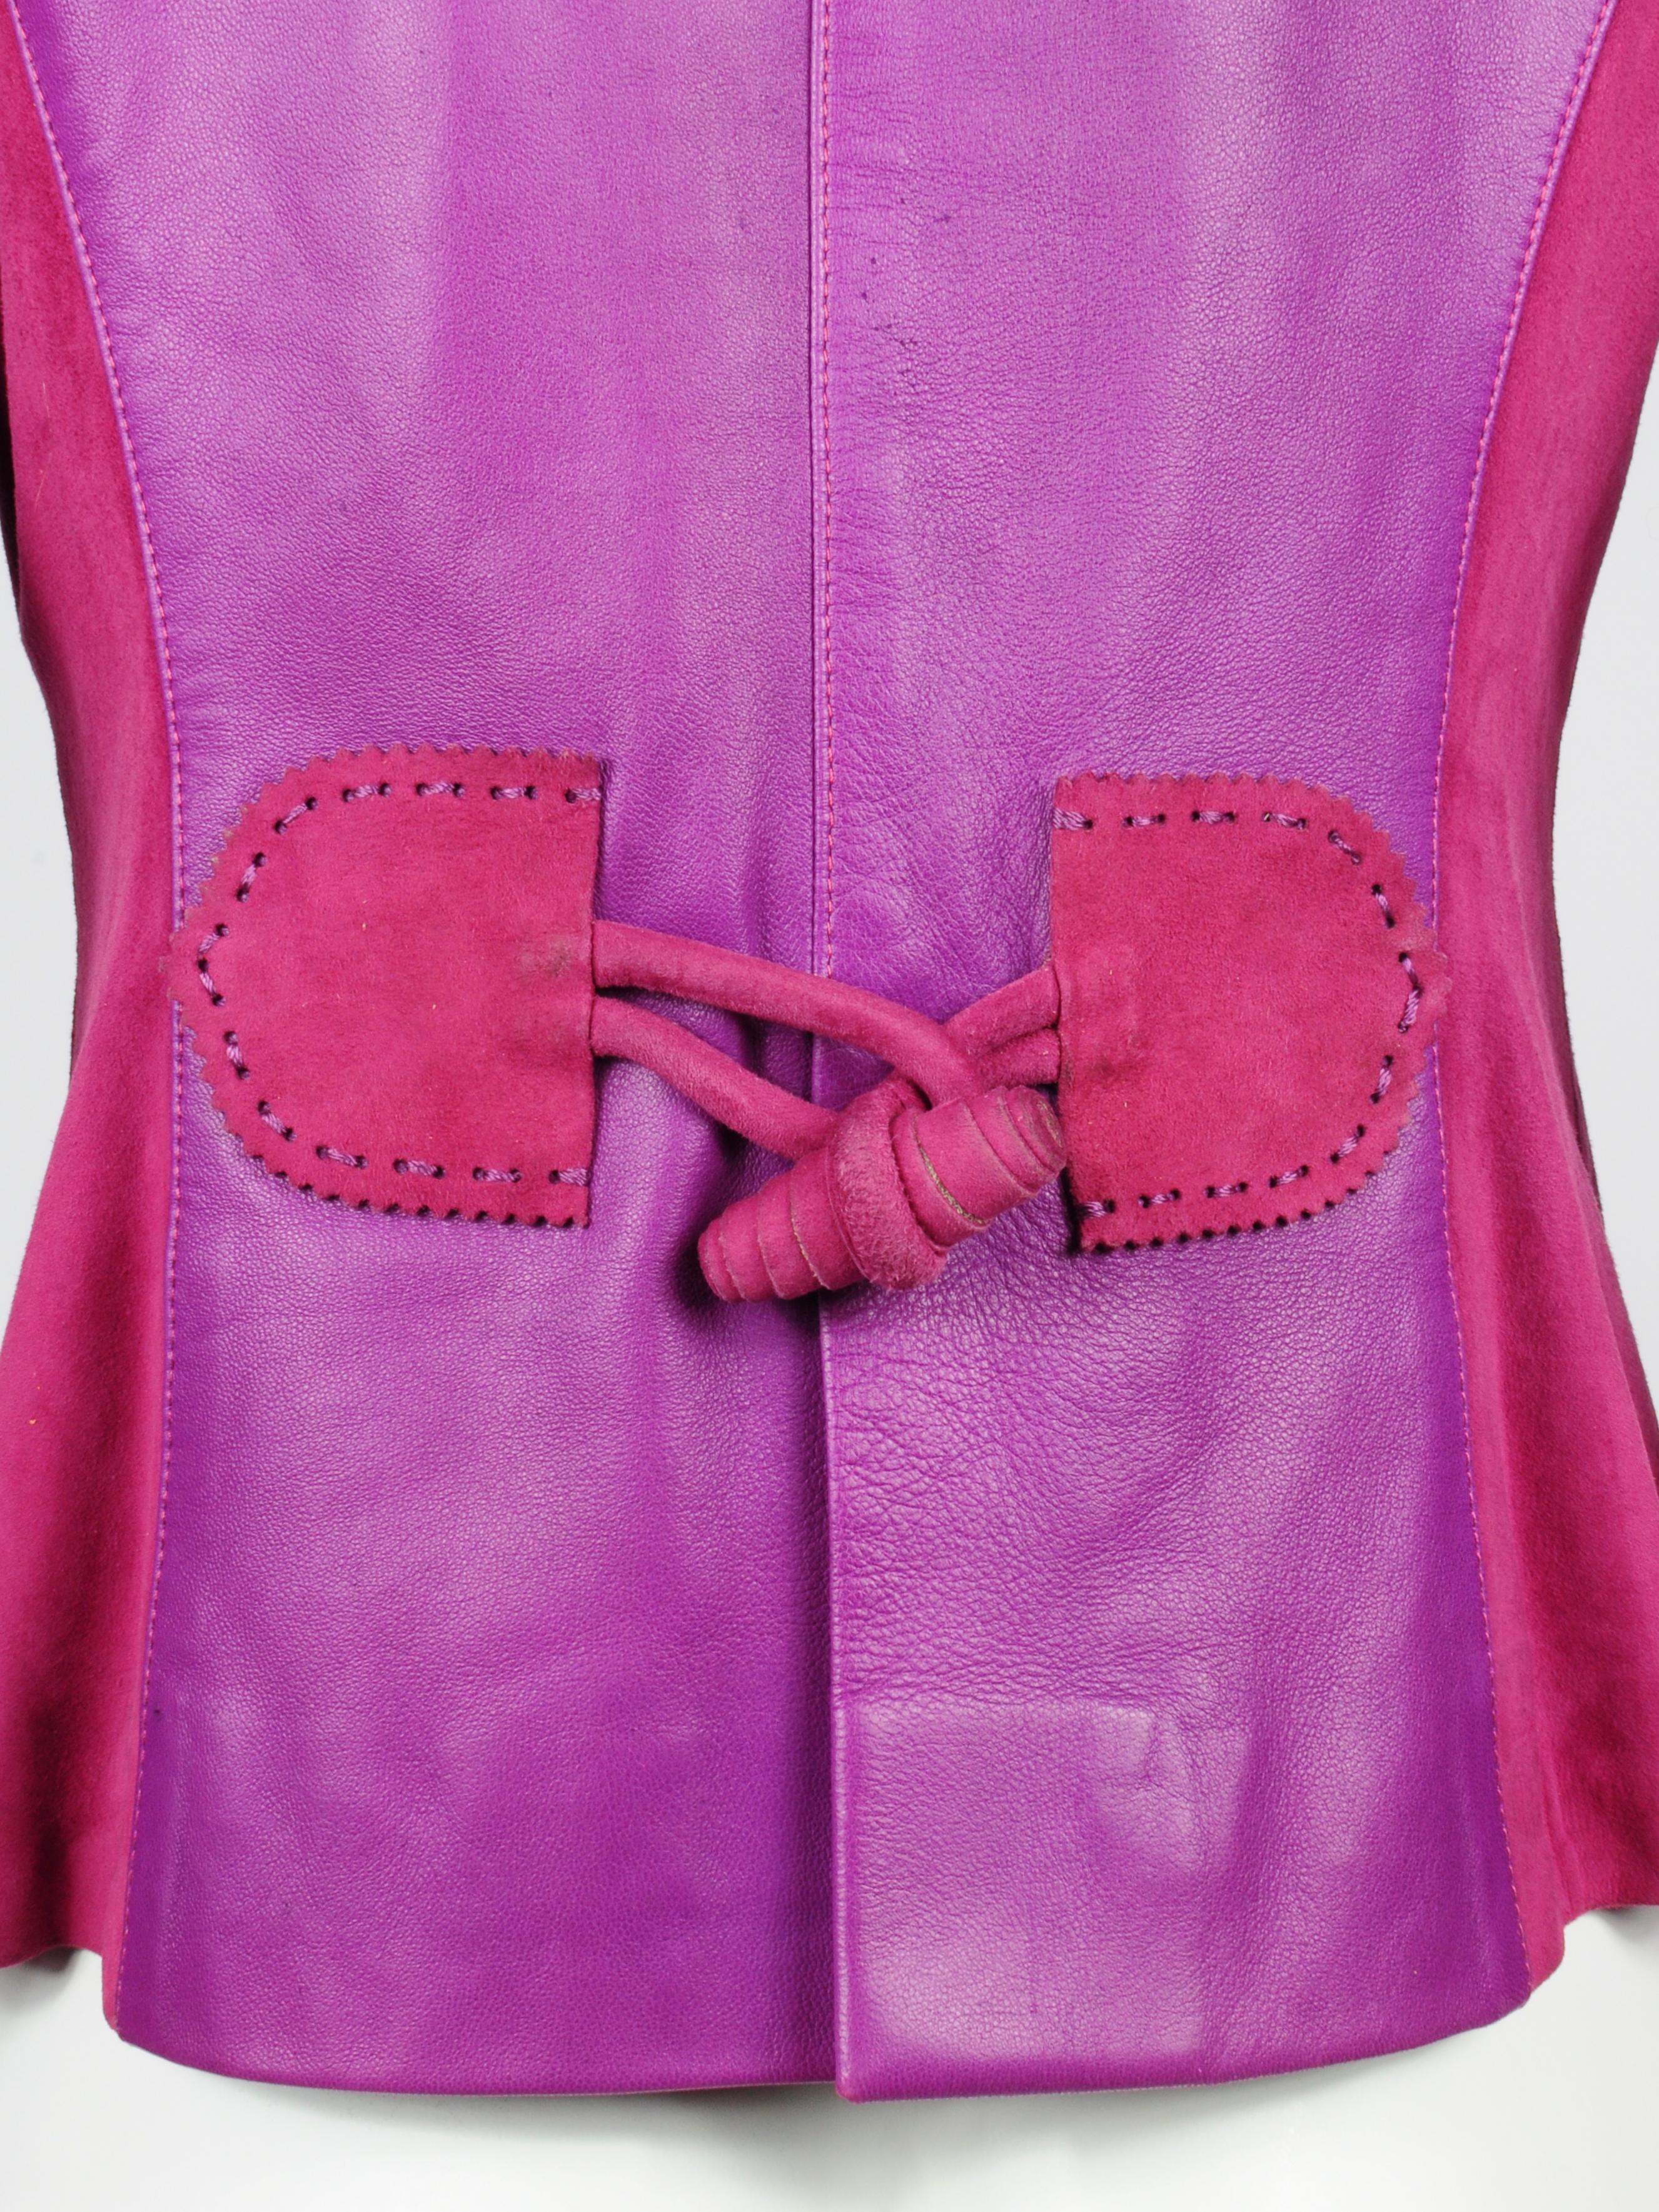 Elizabeth Wessel Monte Carlo Leather and Knitwear Purple Blazer 1980s For Sale 2